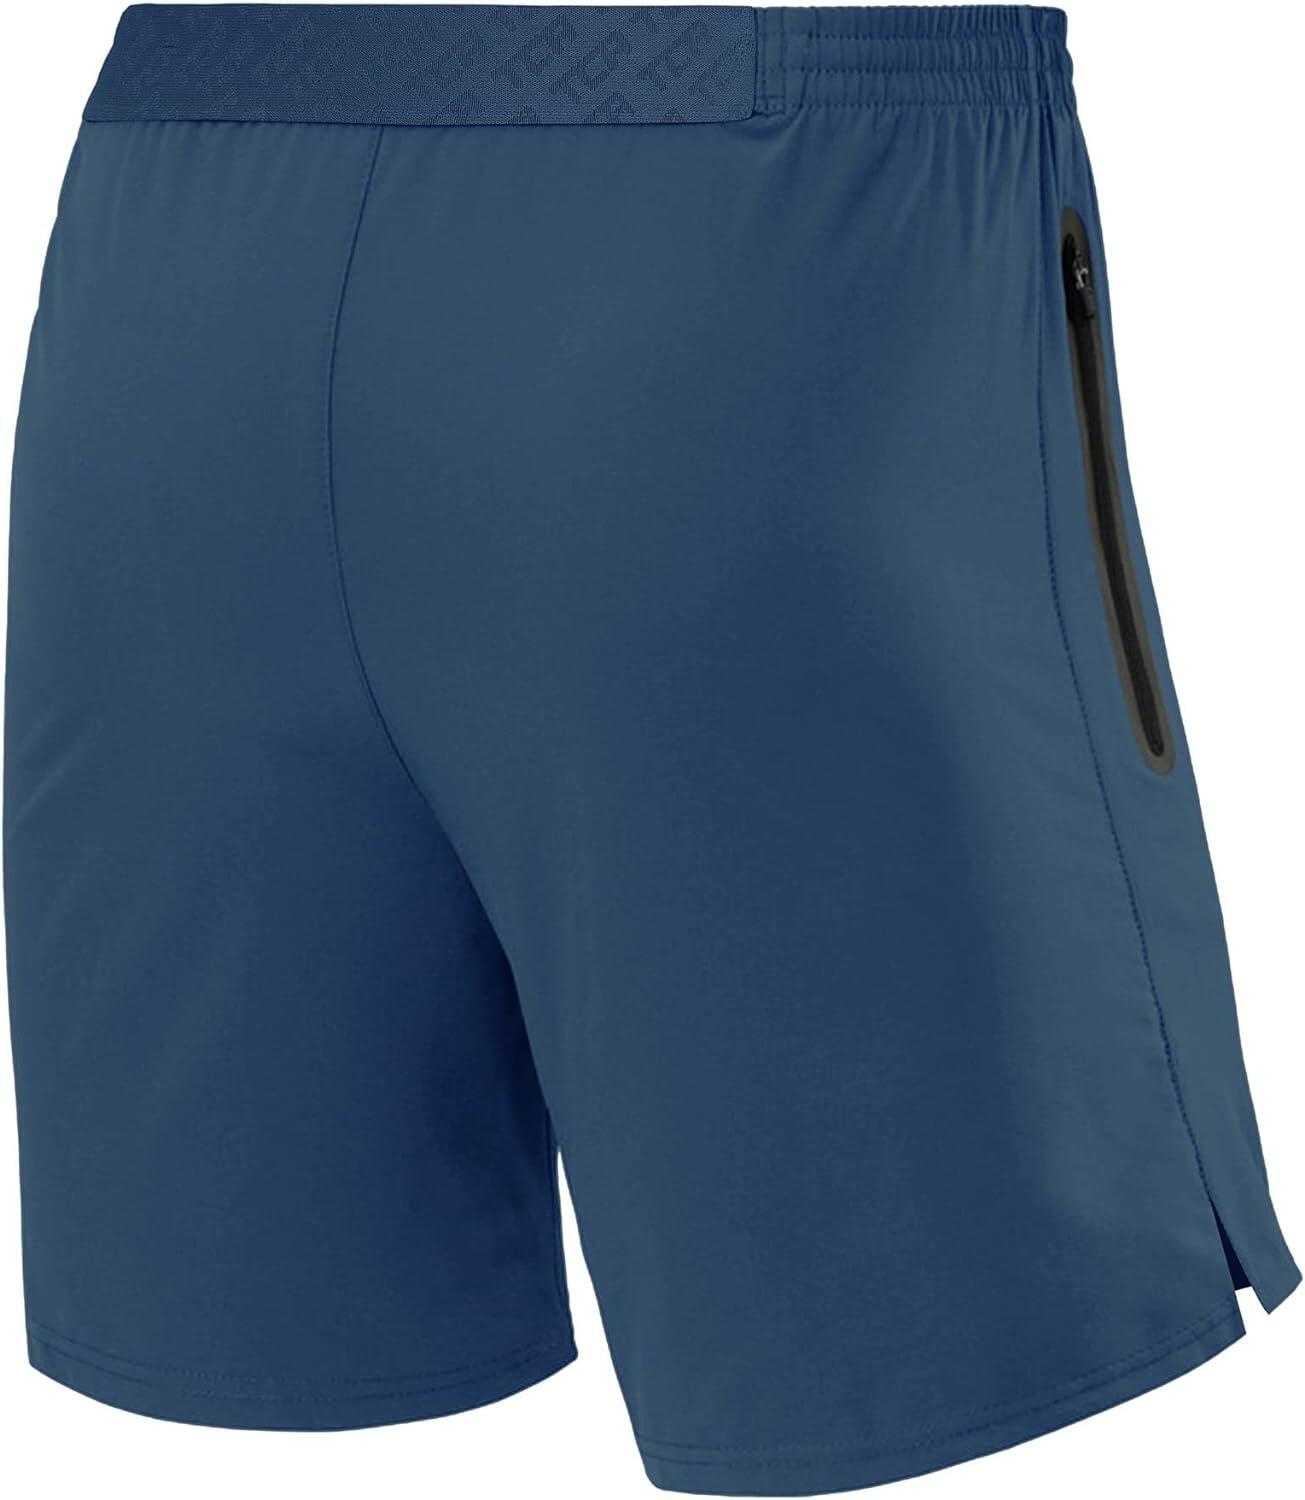 Men's Elite Tech Lightweight Running Shorts with Zip Pockets - Iron Blue 2/6